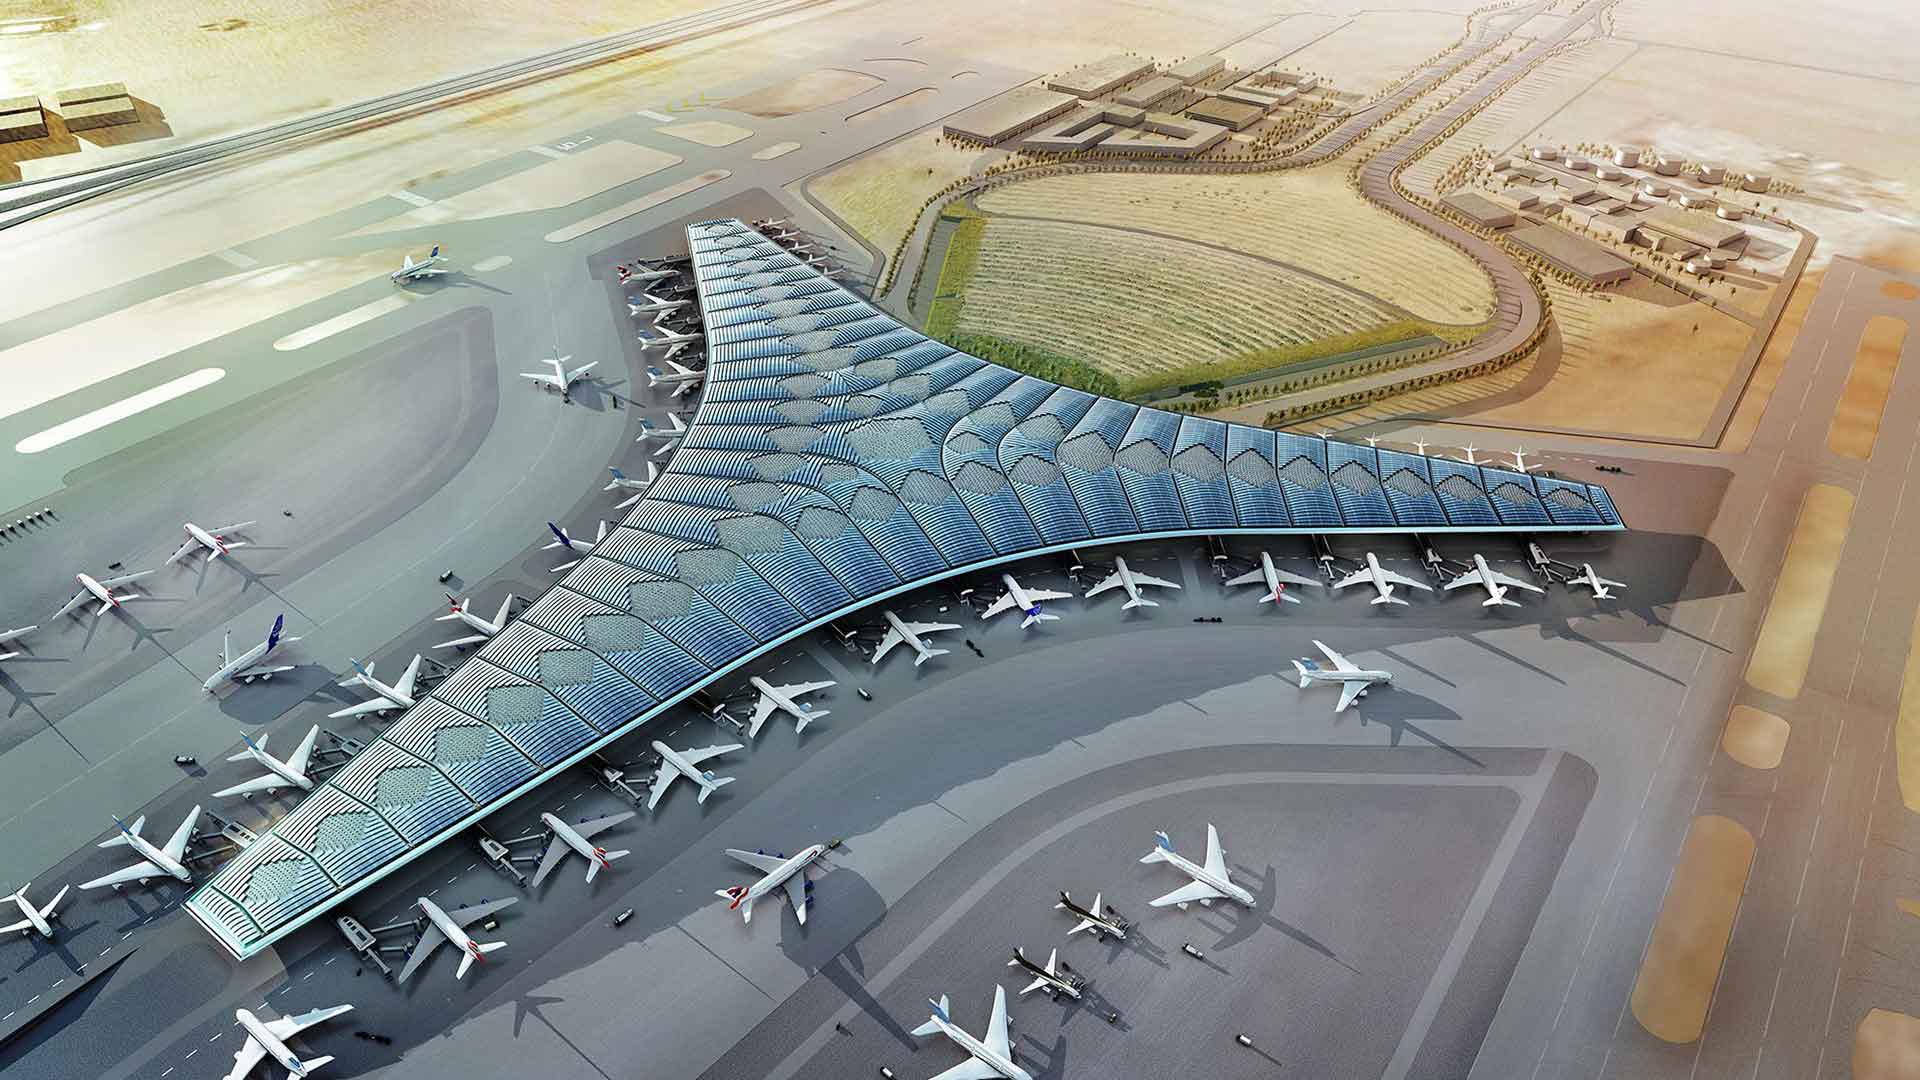 कुवैत अंतर्राष्ट्रीय हवाई अड्डा कुवैत शहर के 15.5 किमी (9.6 मील) दक्षिण में फरवानिया, कुवैत में स्थित एक हवाई अड्डा है, जो 37.7 वर्ग किलोमीटर (14.6 वर्ग मील) के क्षेत्र को कवर करता है।यह अल जज़ीरा और कुवैत एयरलाइंस का केंद्र है।